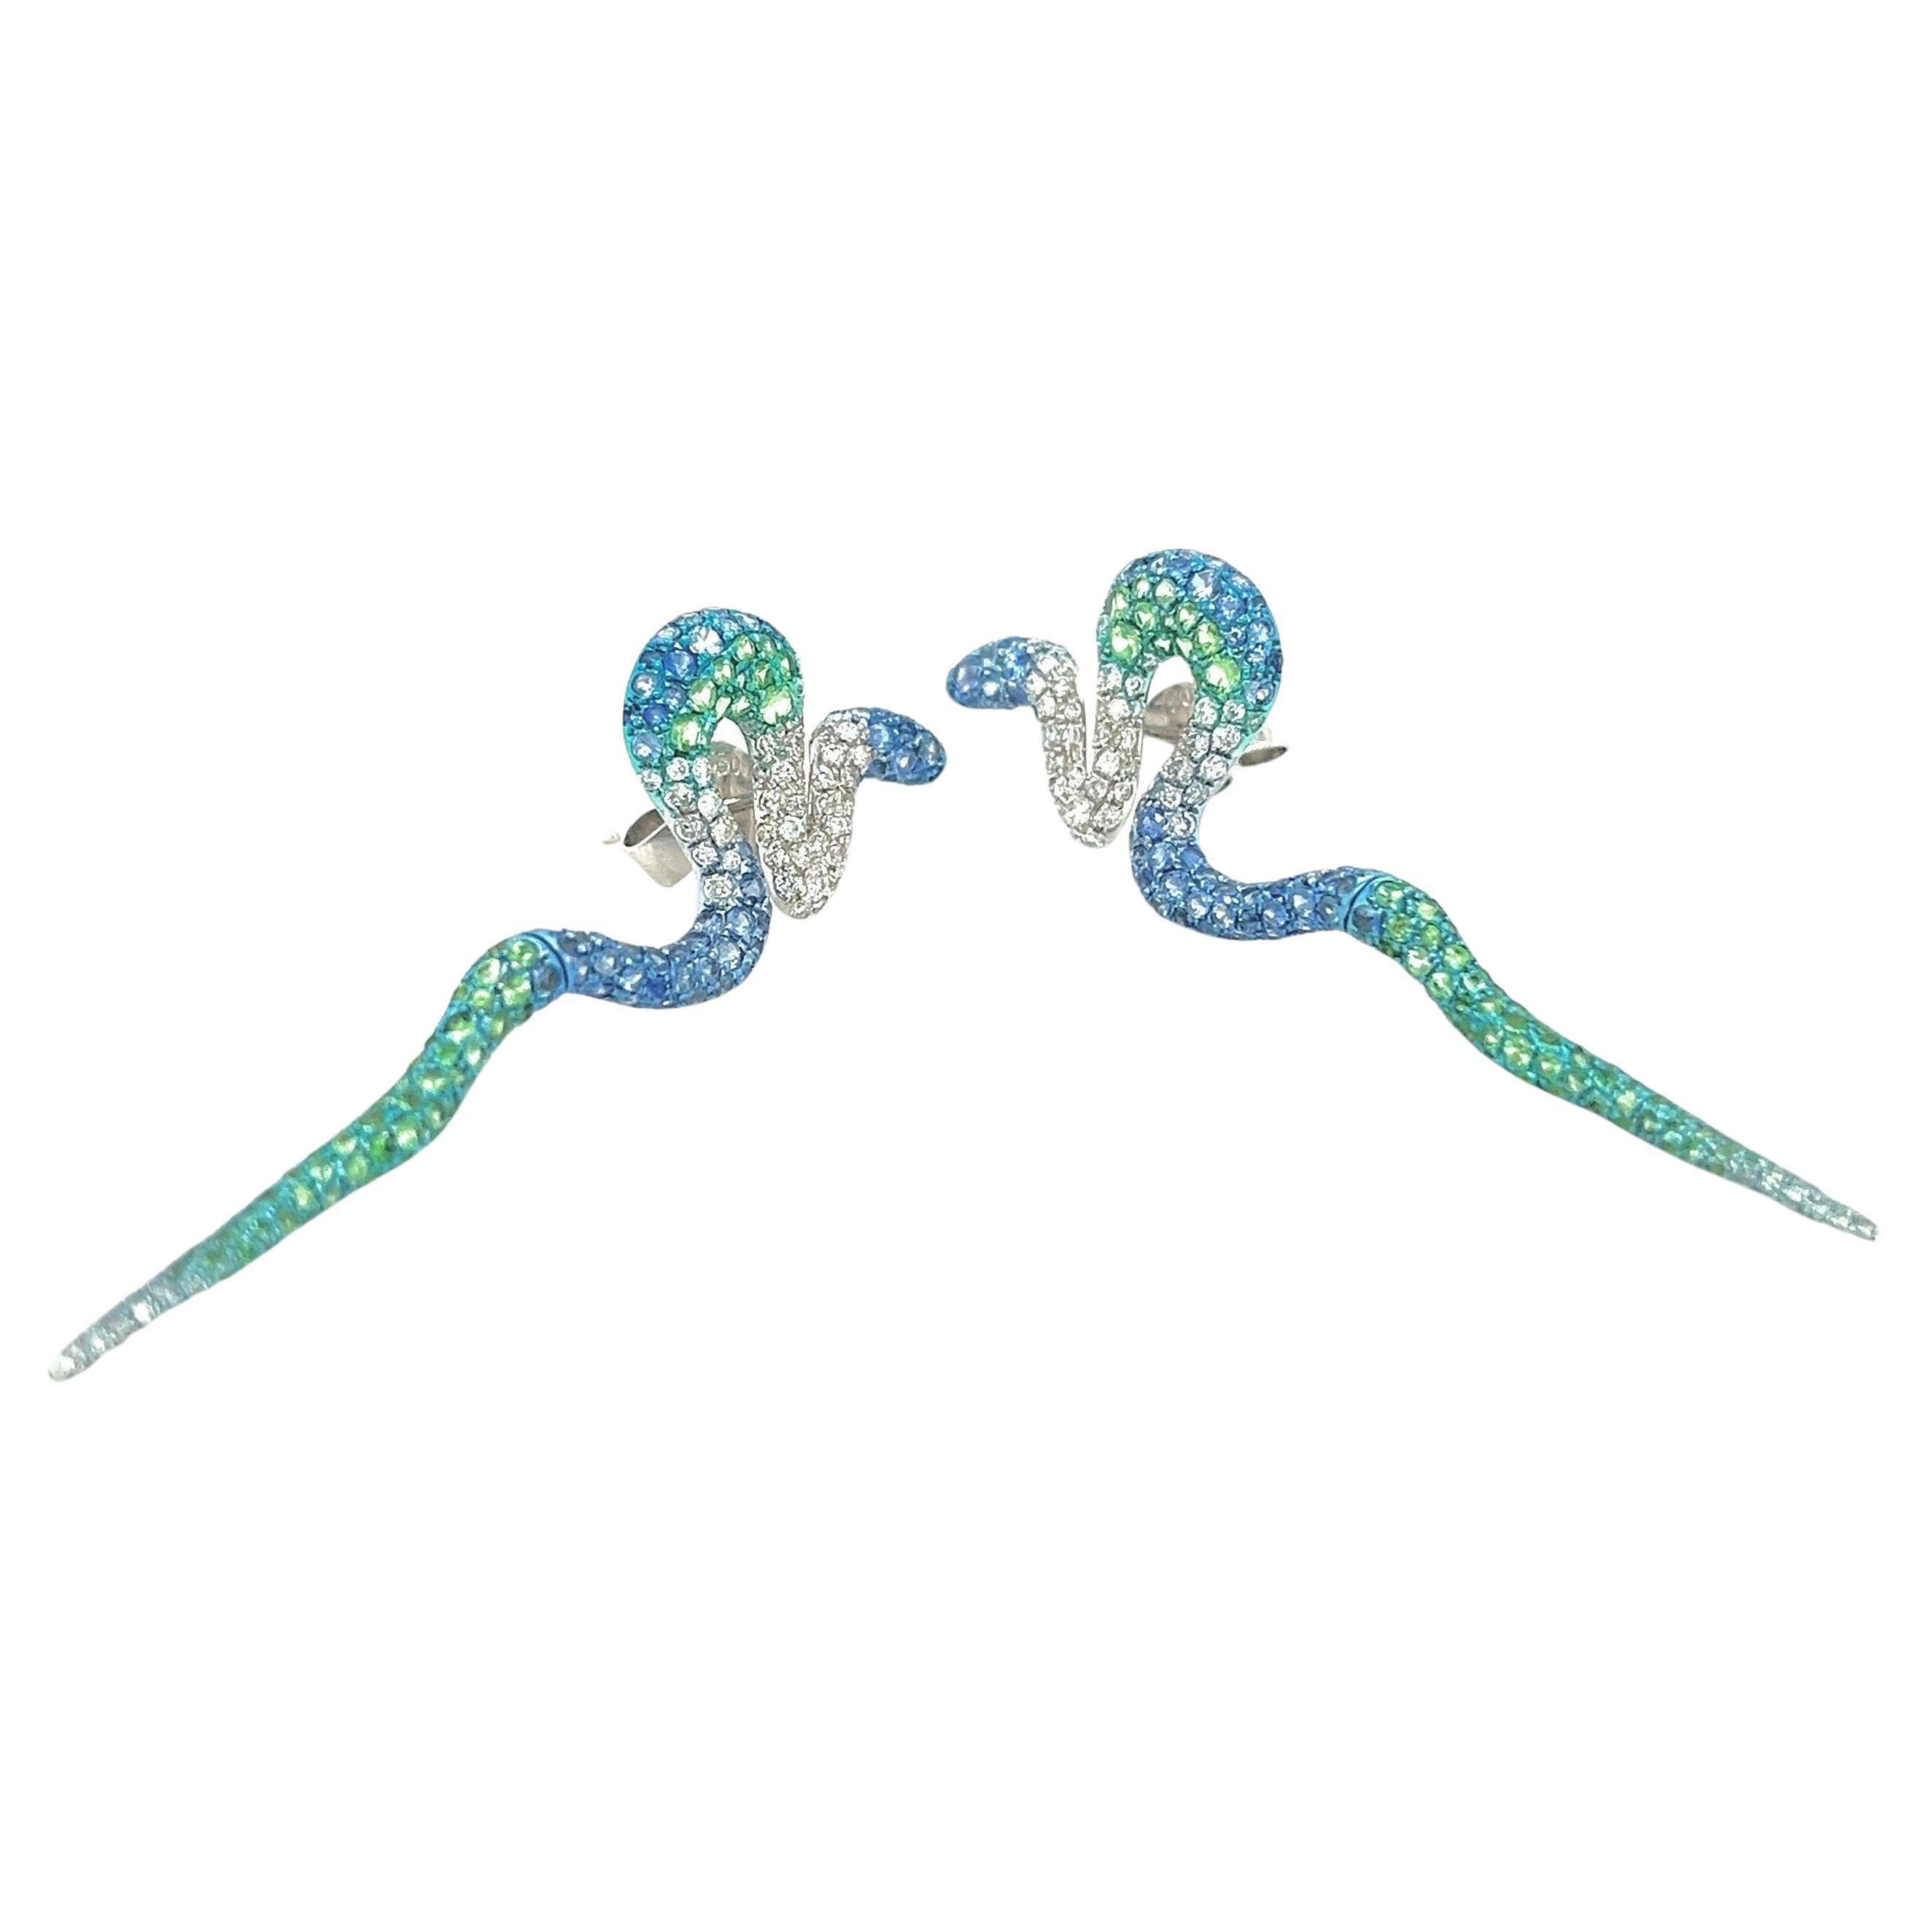 18K White Gold Green Garnet & Sapphire Earrings with Diamonds

144 Blue Sapphires - 1.65 CT
144 Diamonds - 0.80 CT
152 Green Garnets - 1.26 CT
18K White Gold - 6.69 GM

These stunning 18K white gold earrings feature a total of 144 blue sapphires,